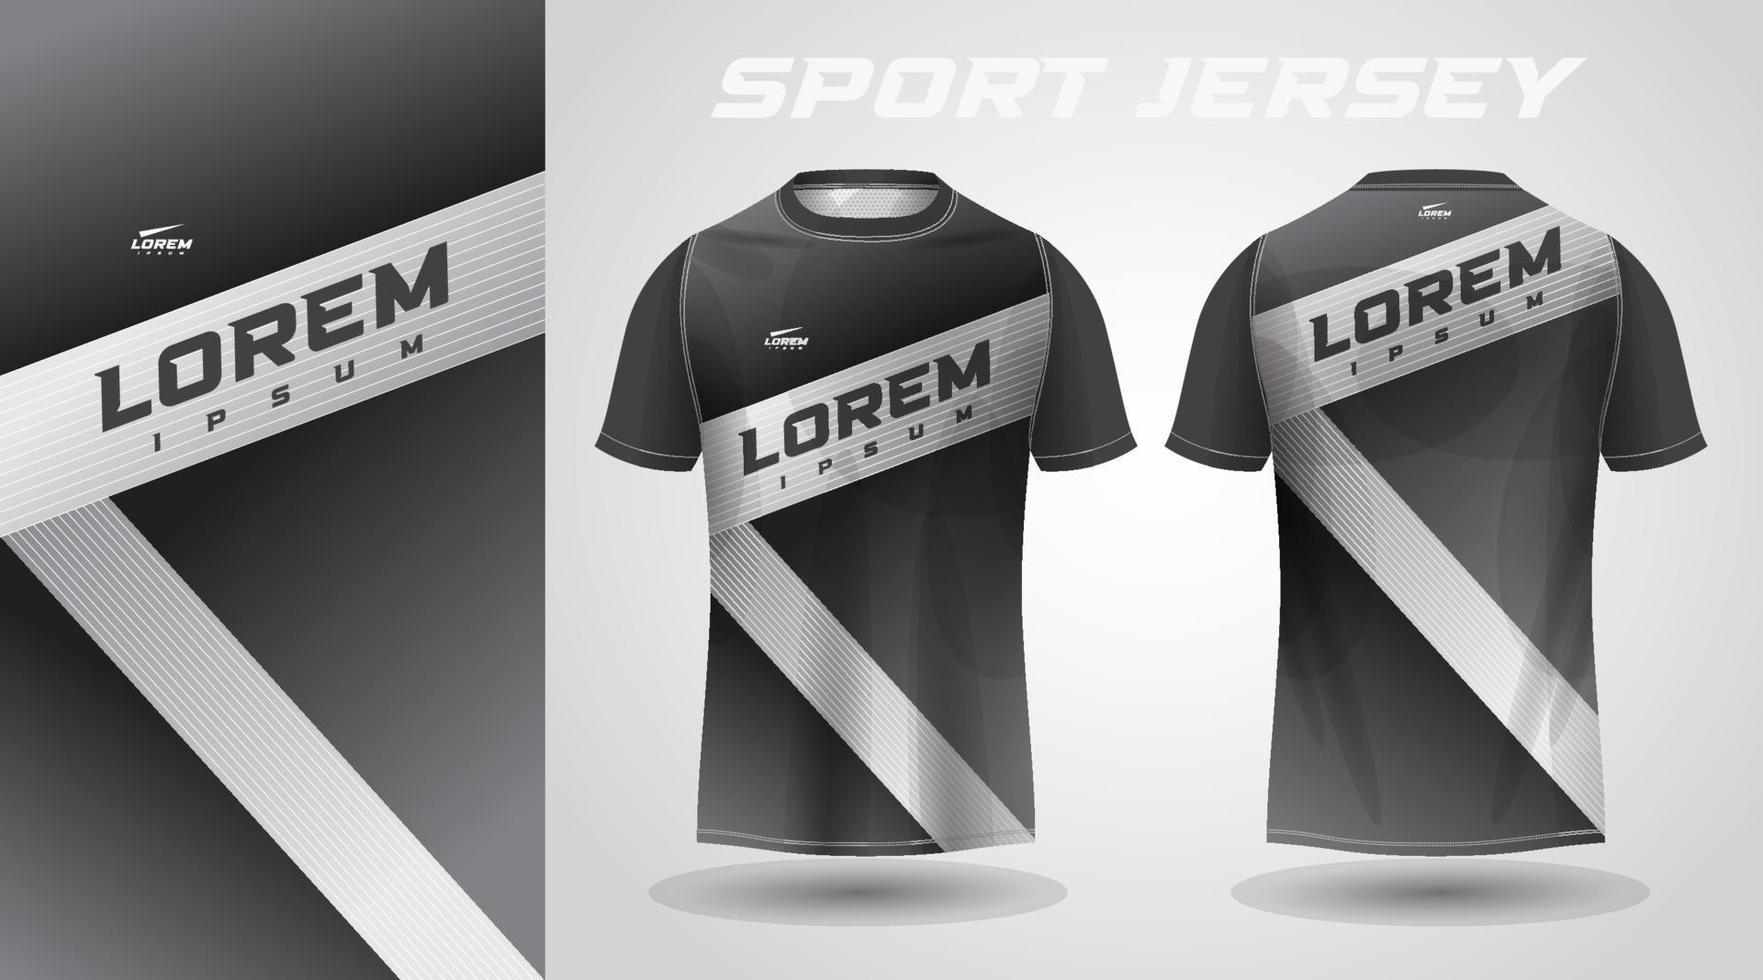 t-shirt nera con design in jersey sportivo vettore